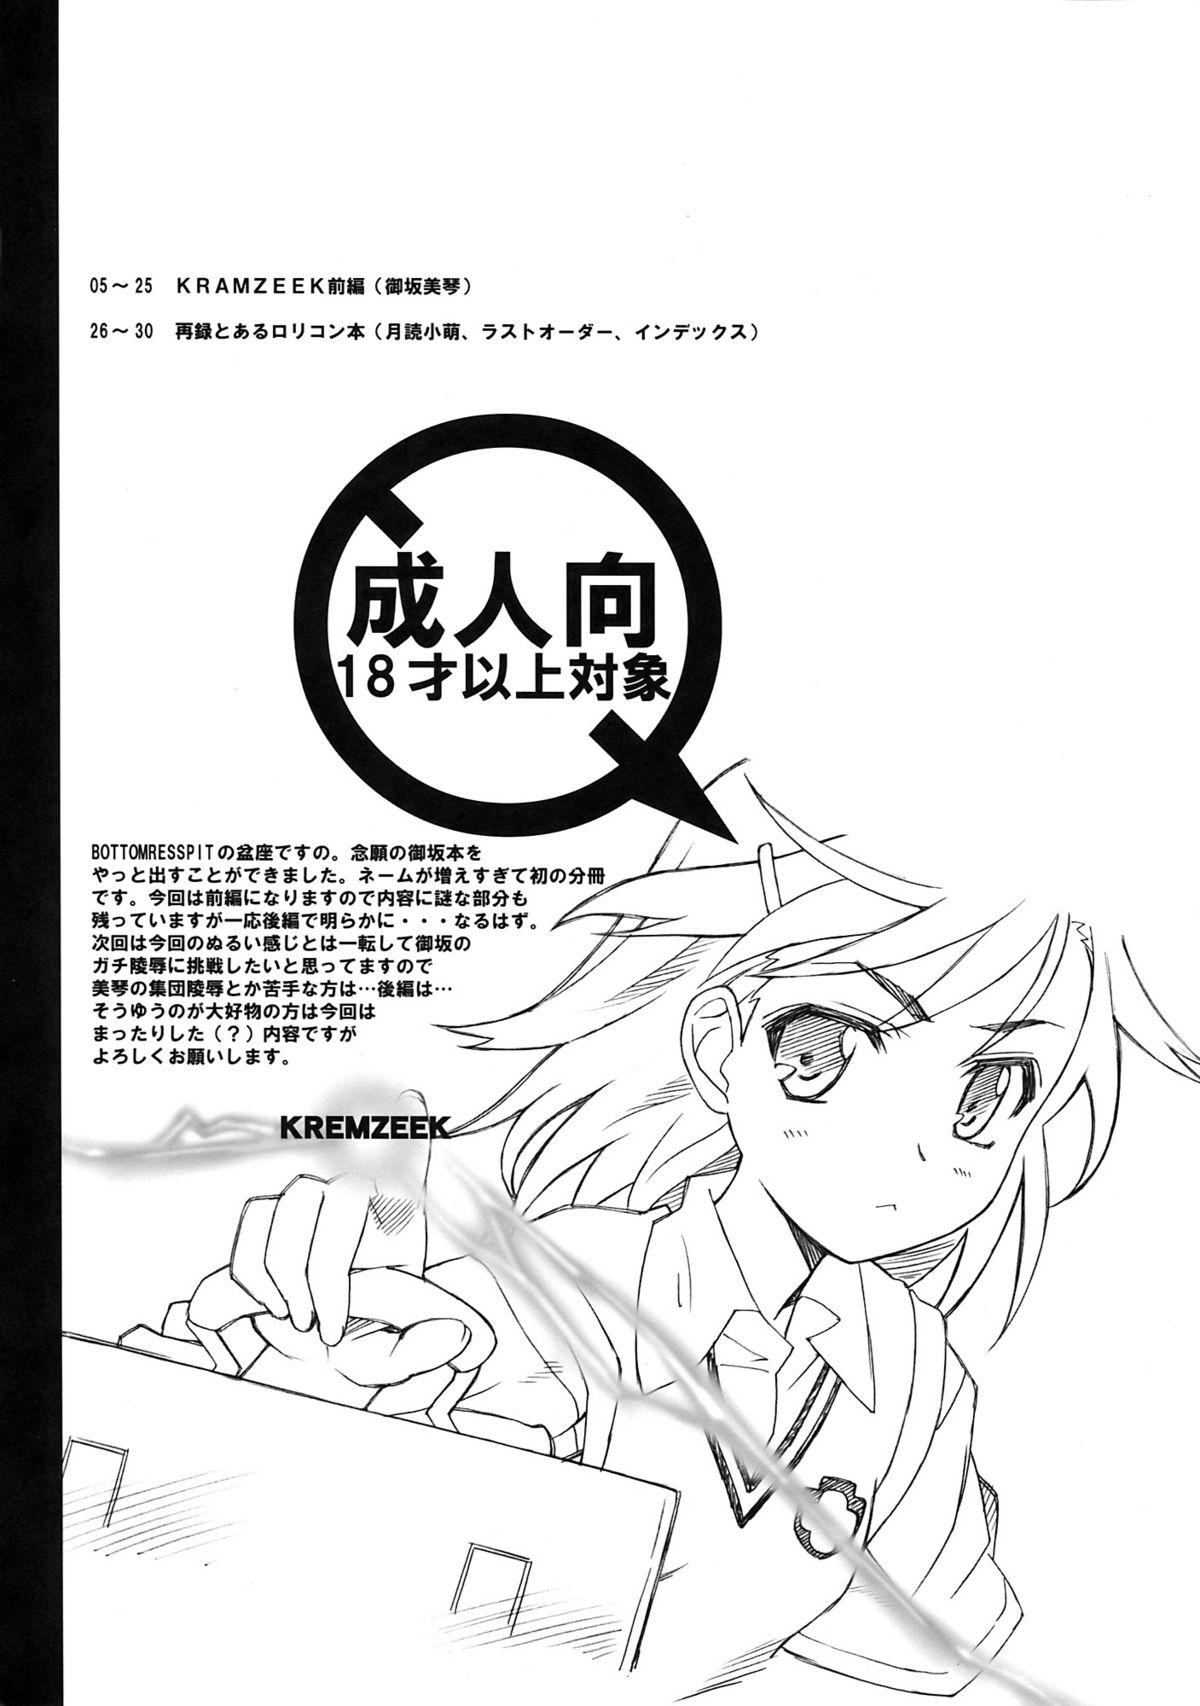 Nurse KRAMZEEK - Toaru majutsu no index Jerk Off Instruction - Page 4